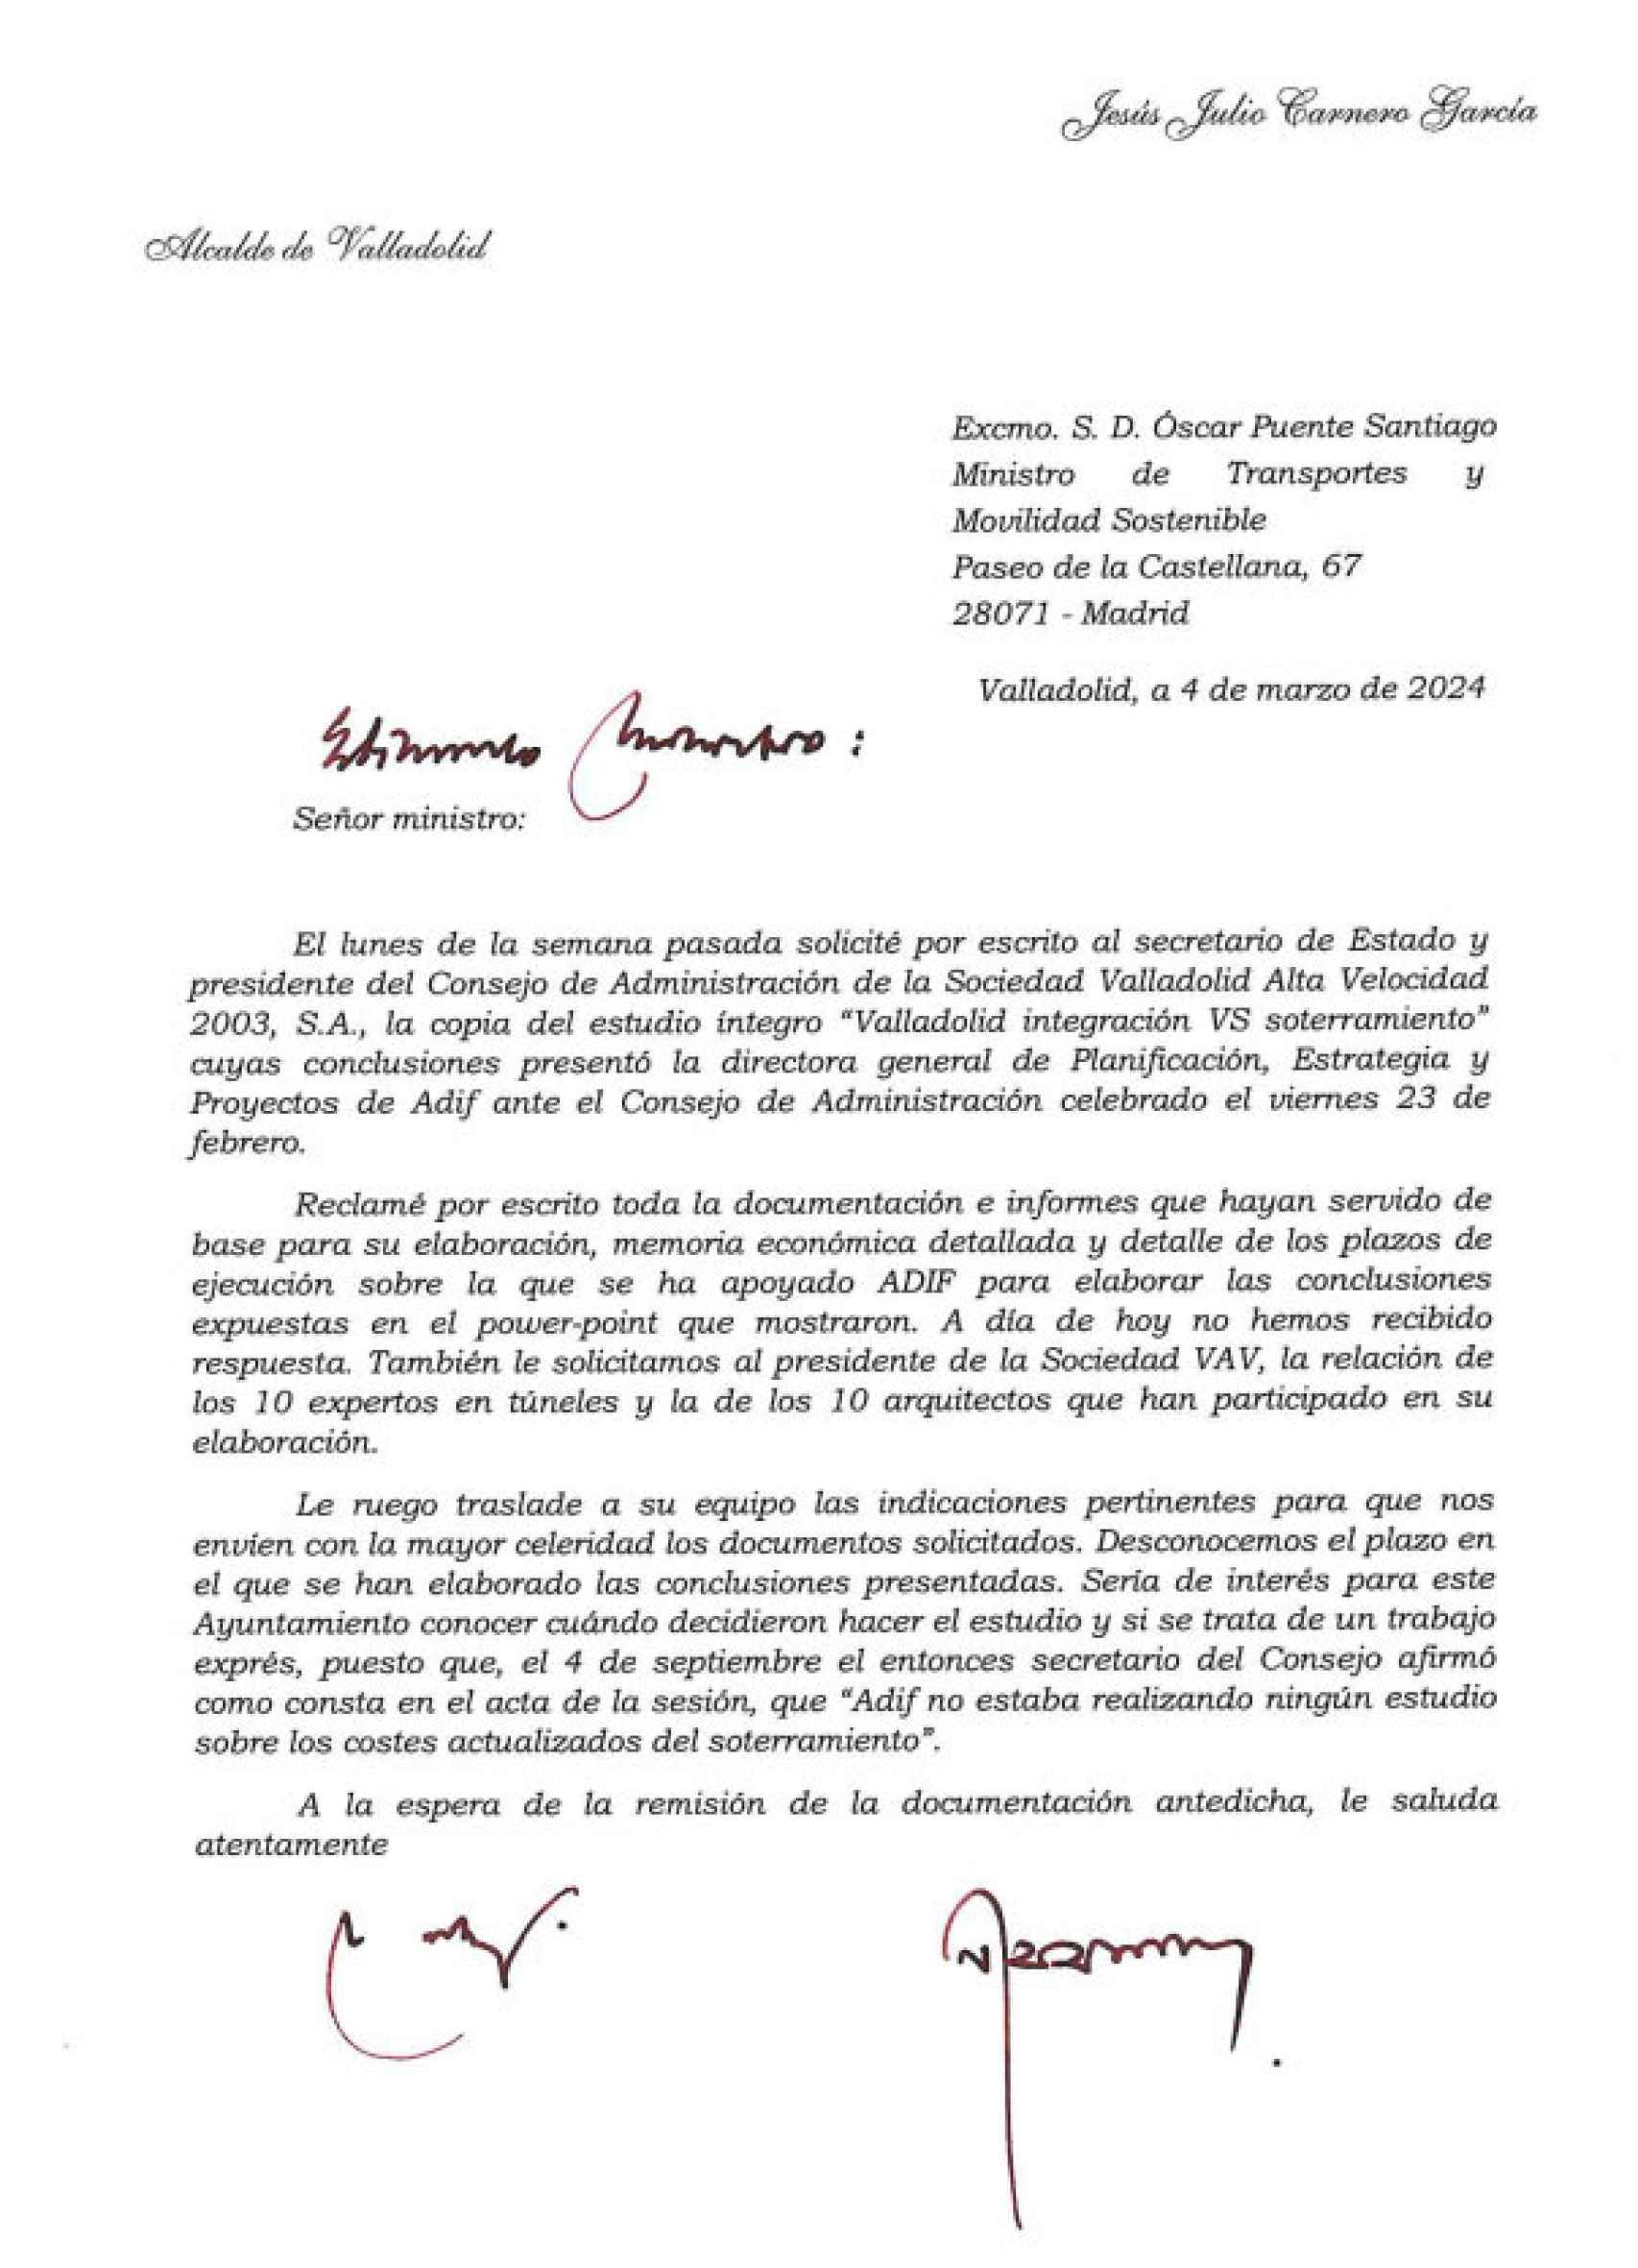 La carta de Jesús Julio Carnero al ministro de Transportes Óscar Puente